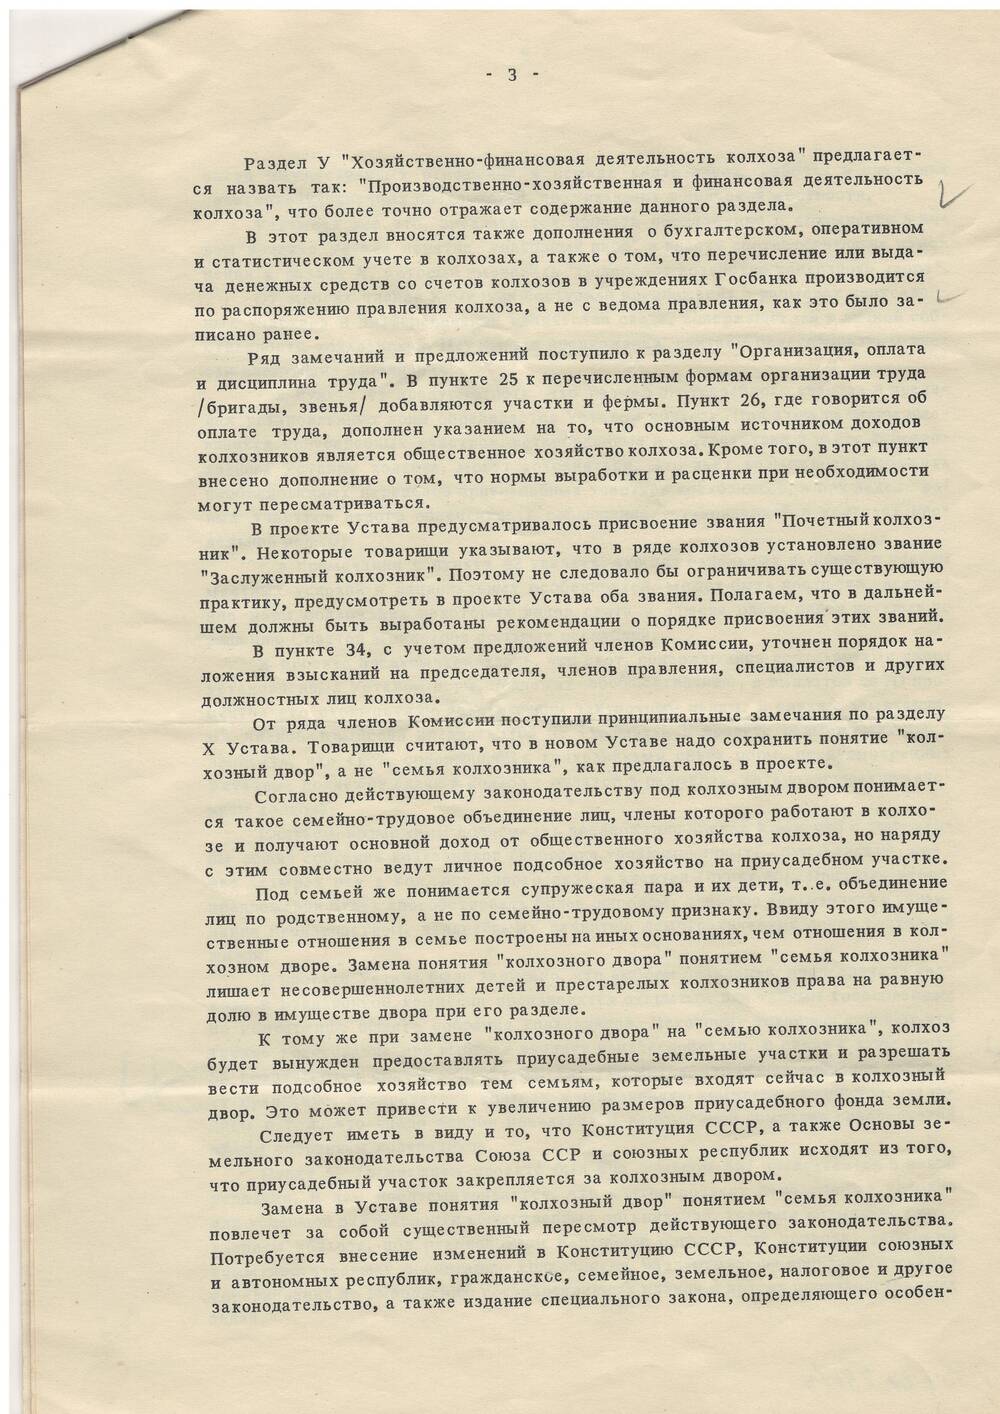 Фрагмент о замечаниях проекта Устава 1969 год